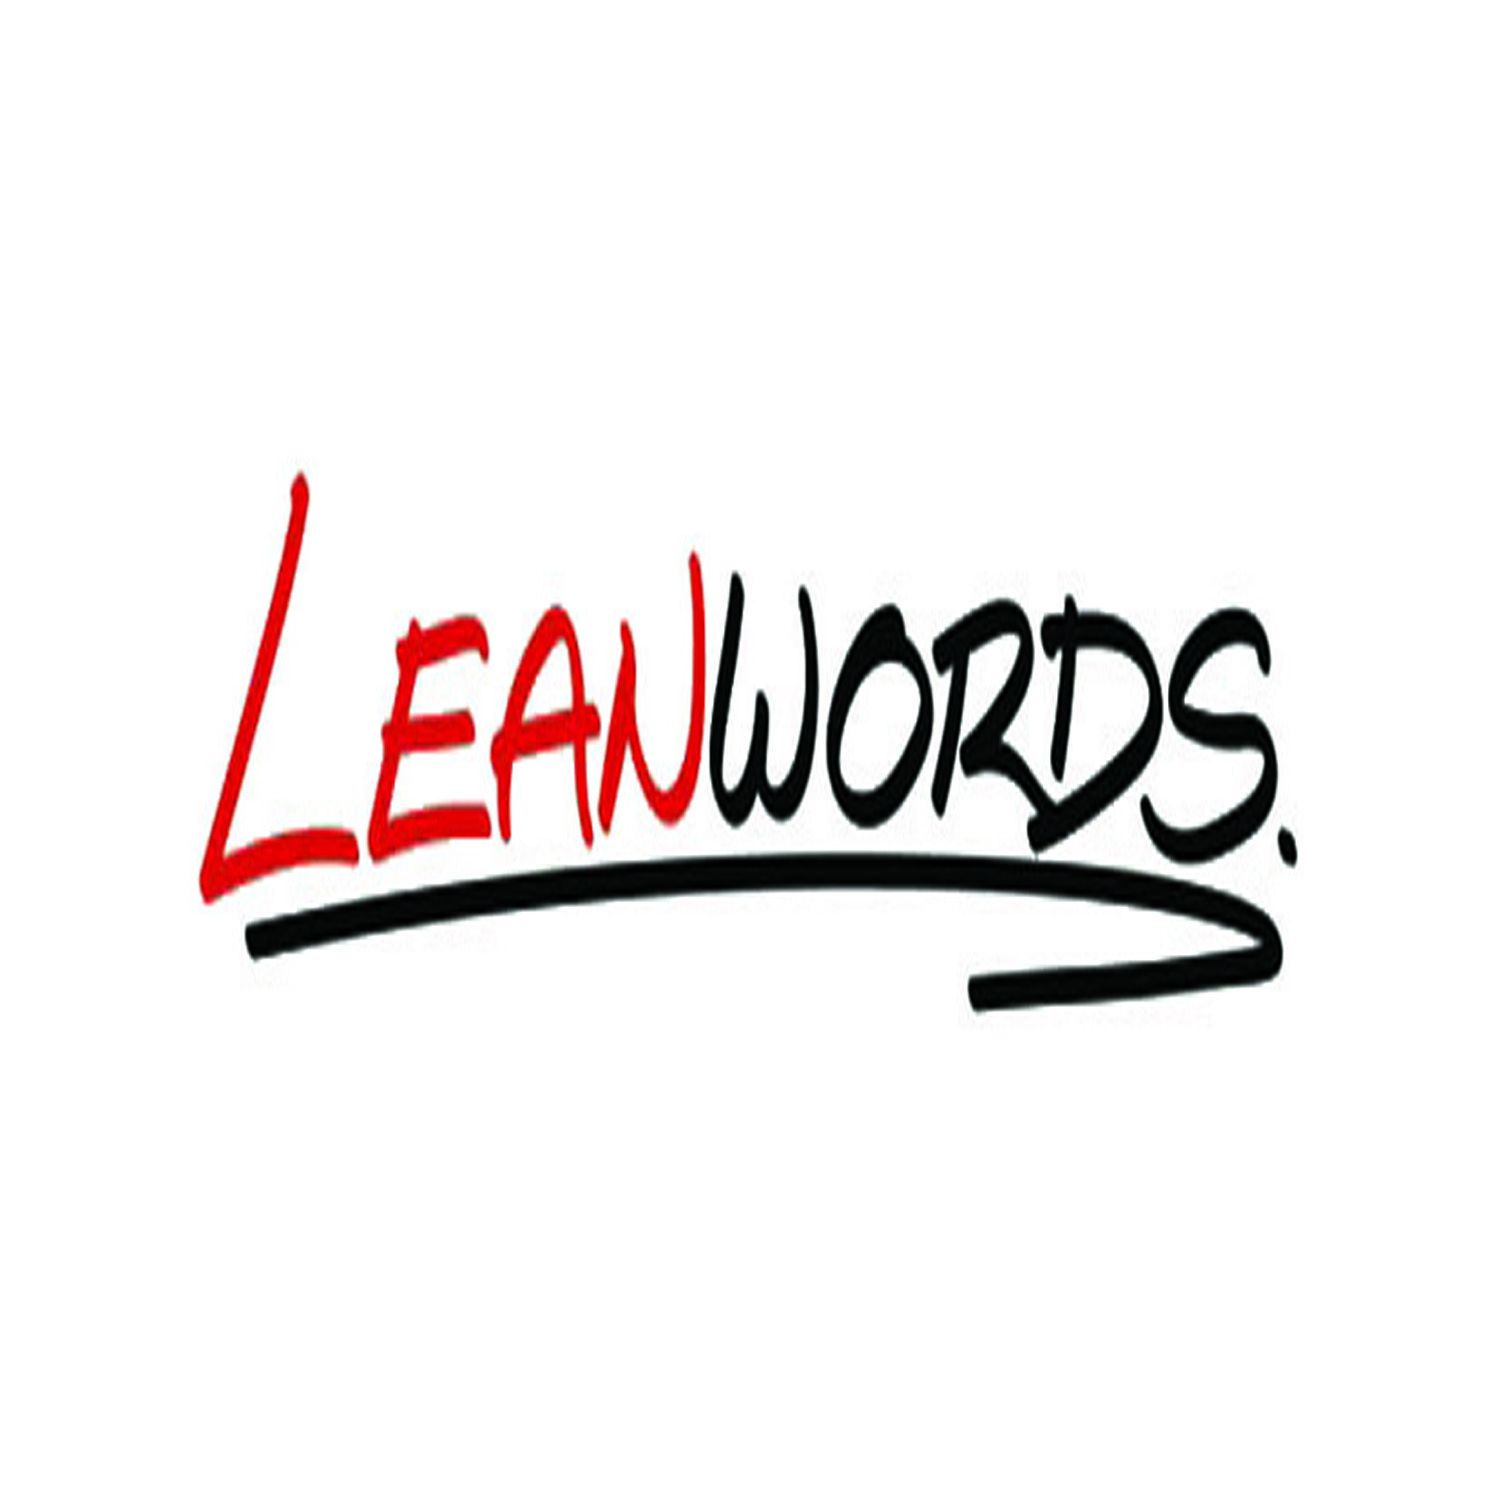 Leanwords